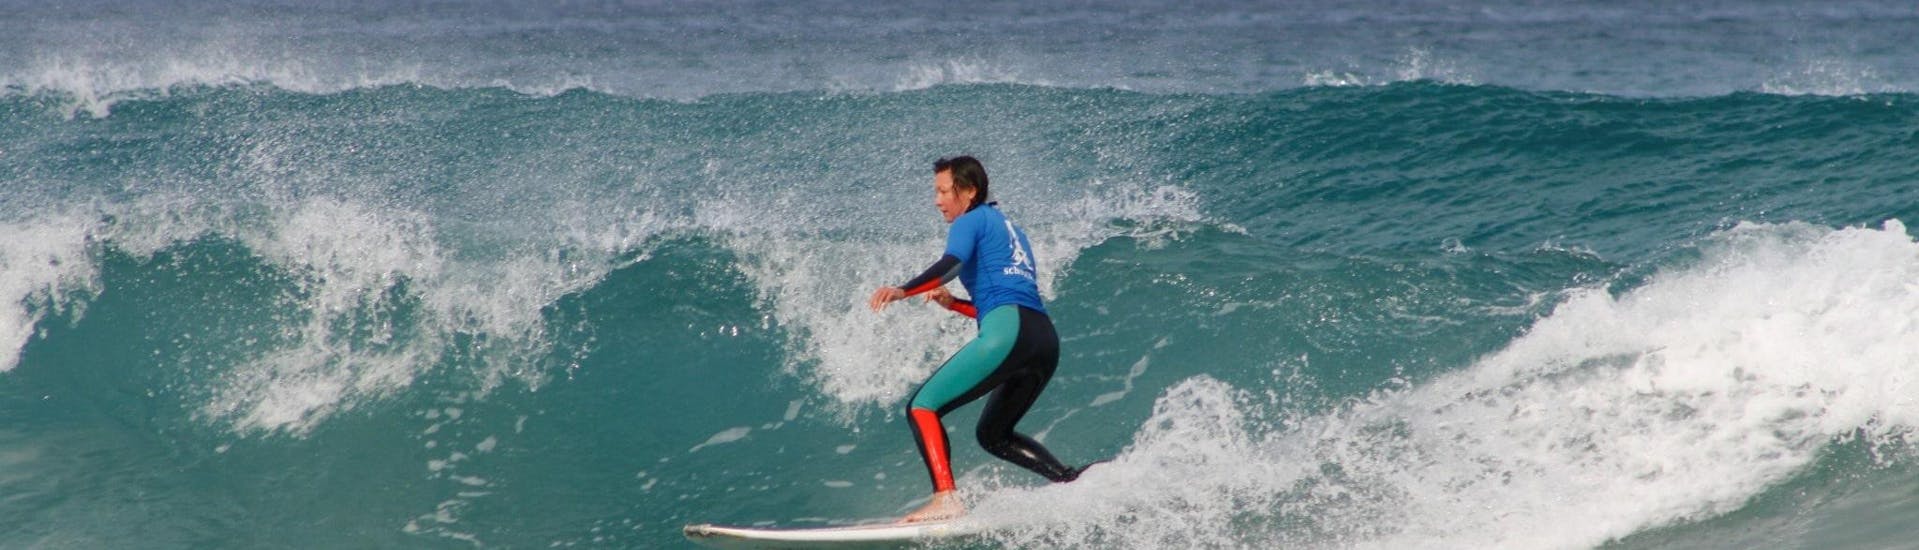 Una persona montando una ola durante las Clases Privadas de Surf en la Playa de Famara con Surf & SUP School3S Lanzarote.